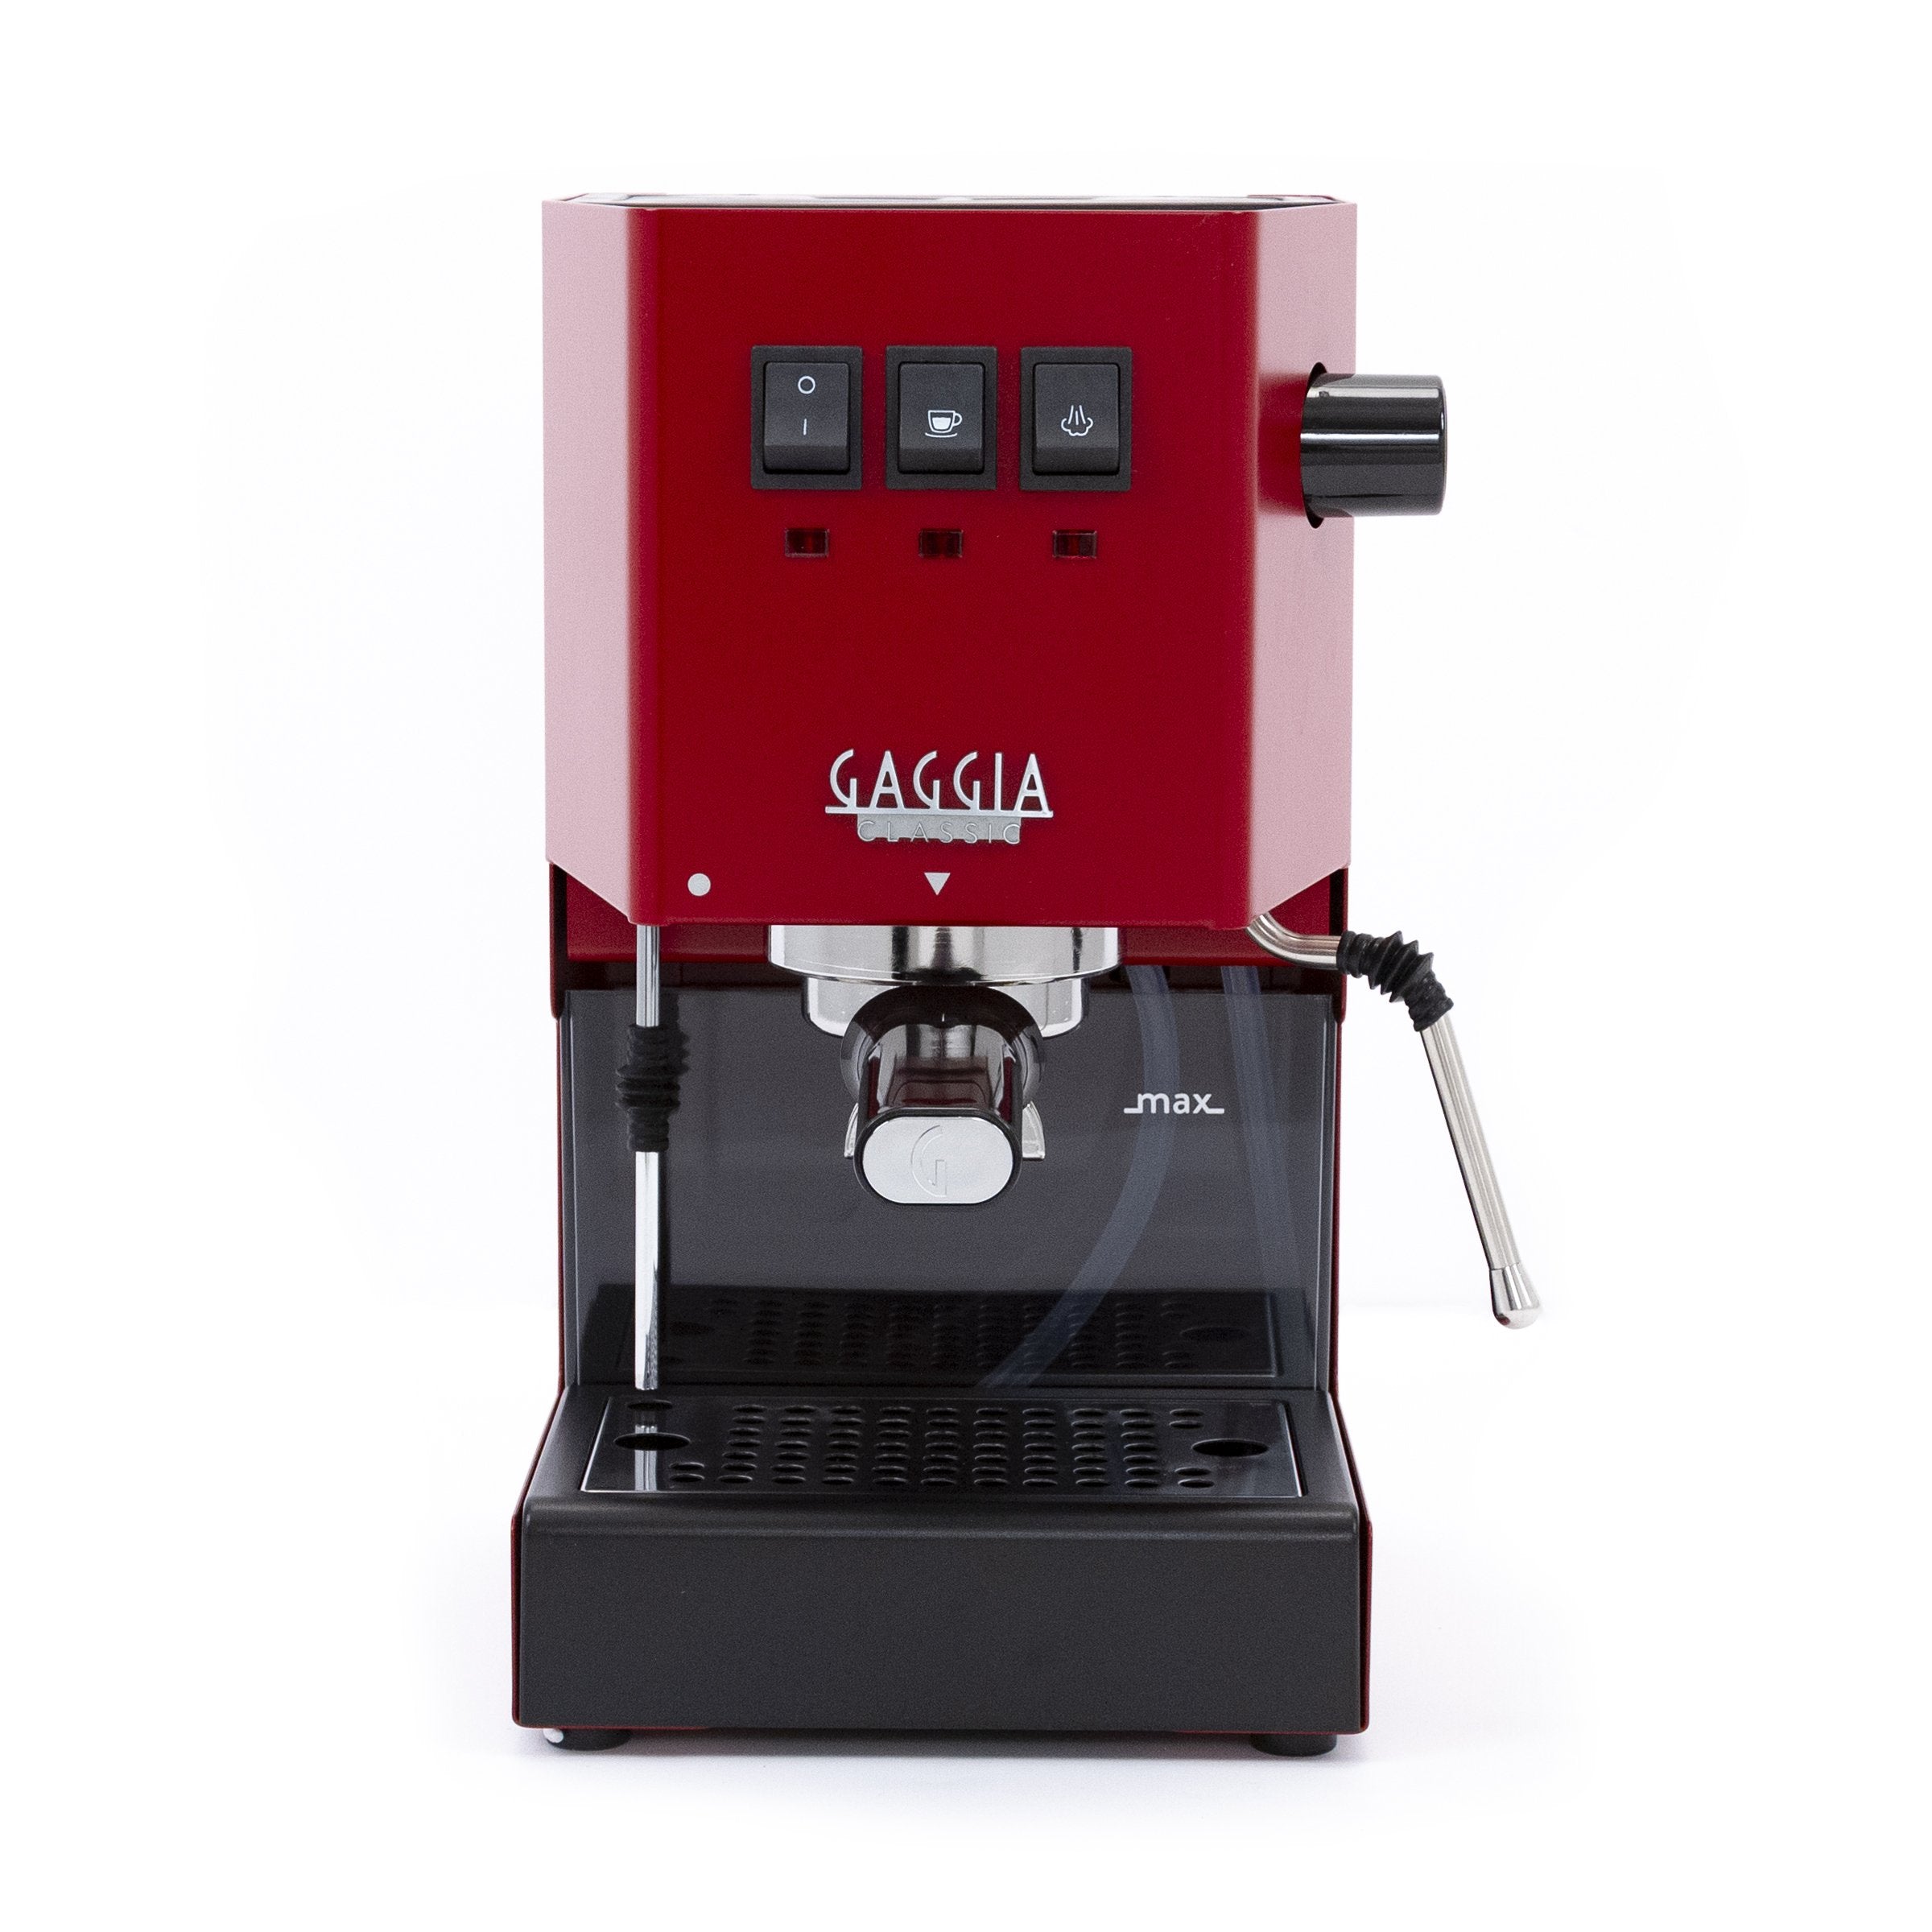 Gaggia Classic Pro Espresso Machine - Italian Espresso Machine - Manual Espresso machine - Residental Espresso Machine - Red Gaggia Classic Pro